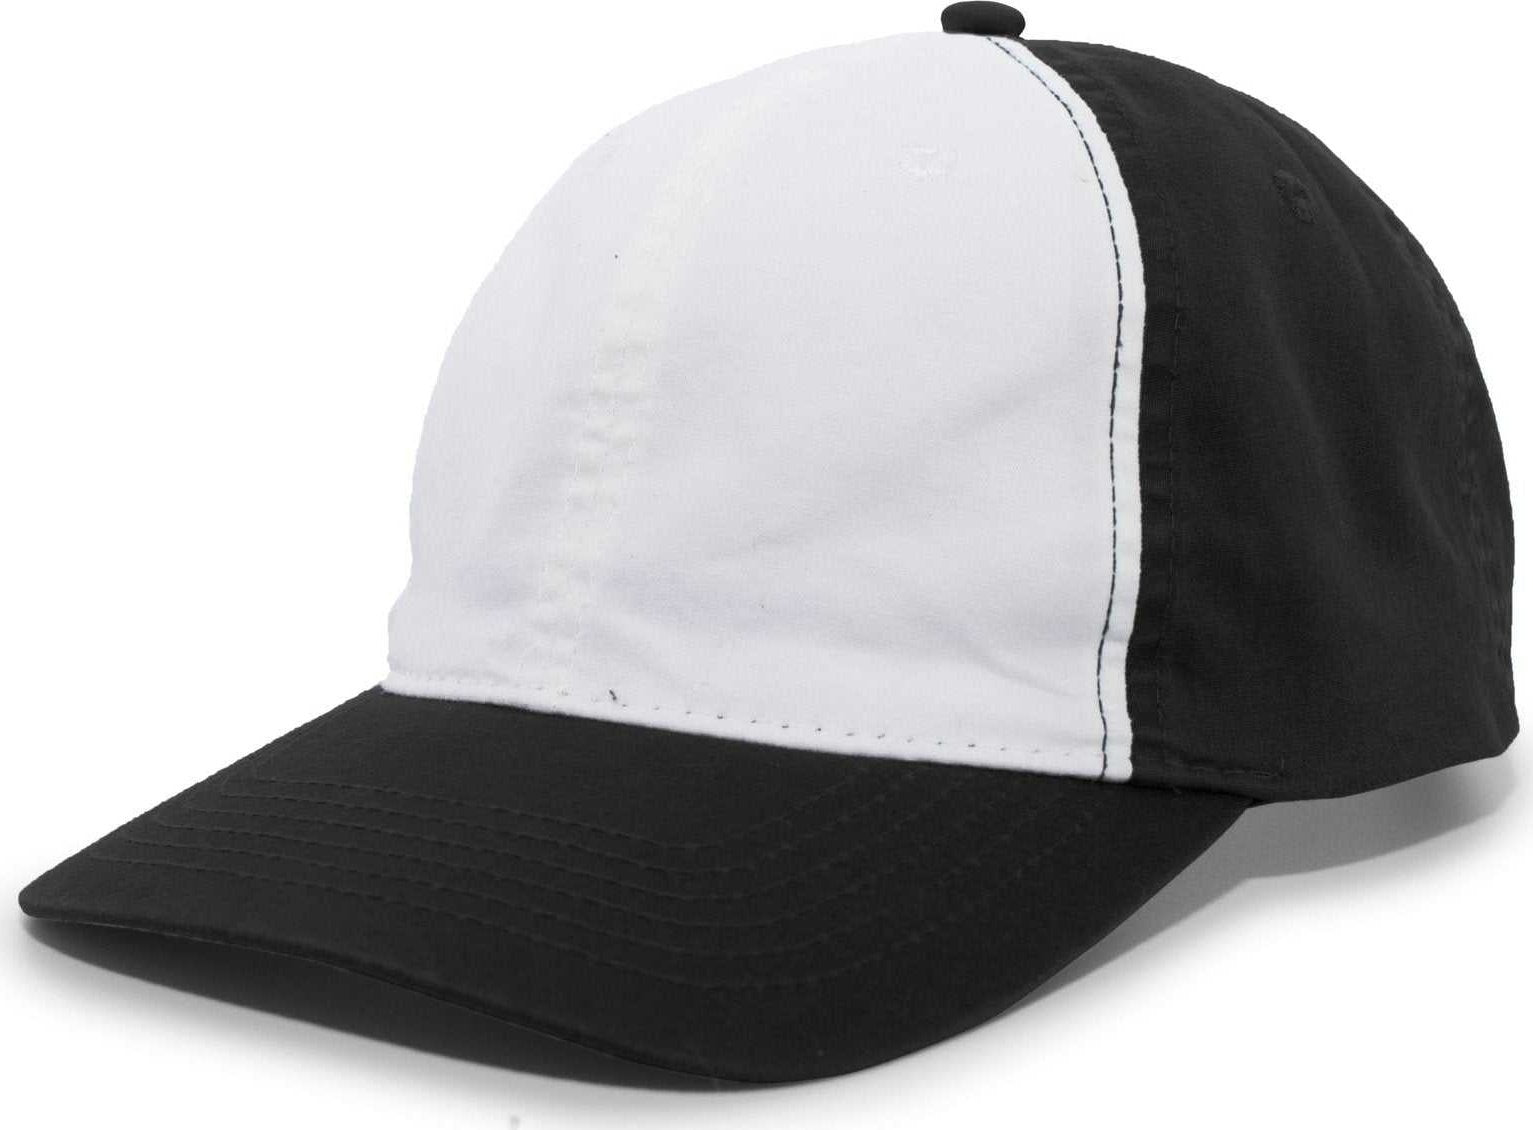 Pacific Headwear V57 Vintage Cotton Buckle Back Cap - Black White - HIT a Double